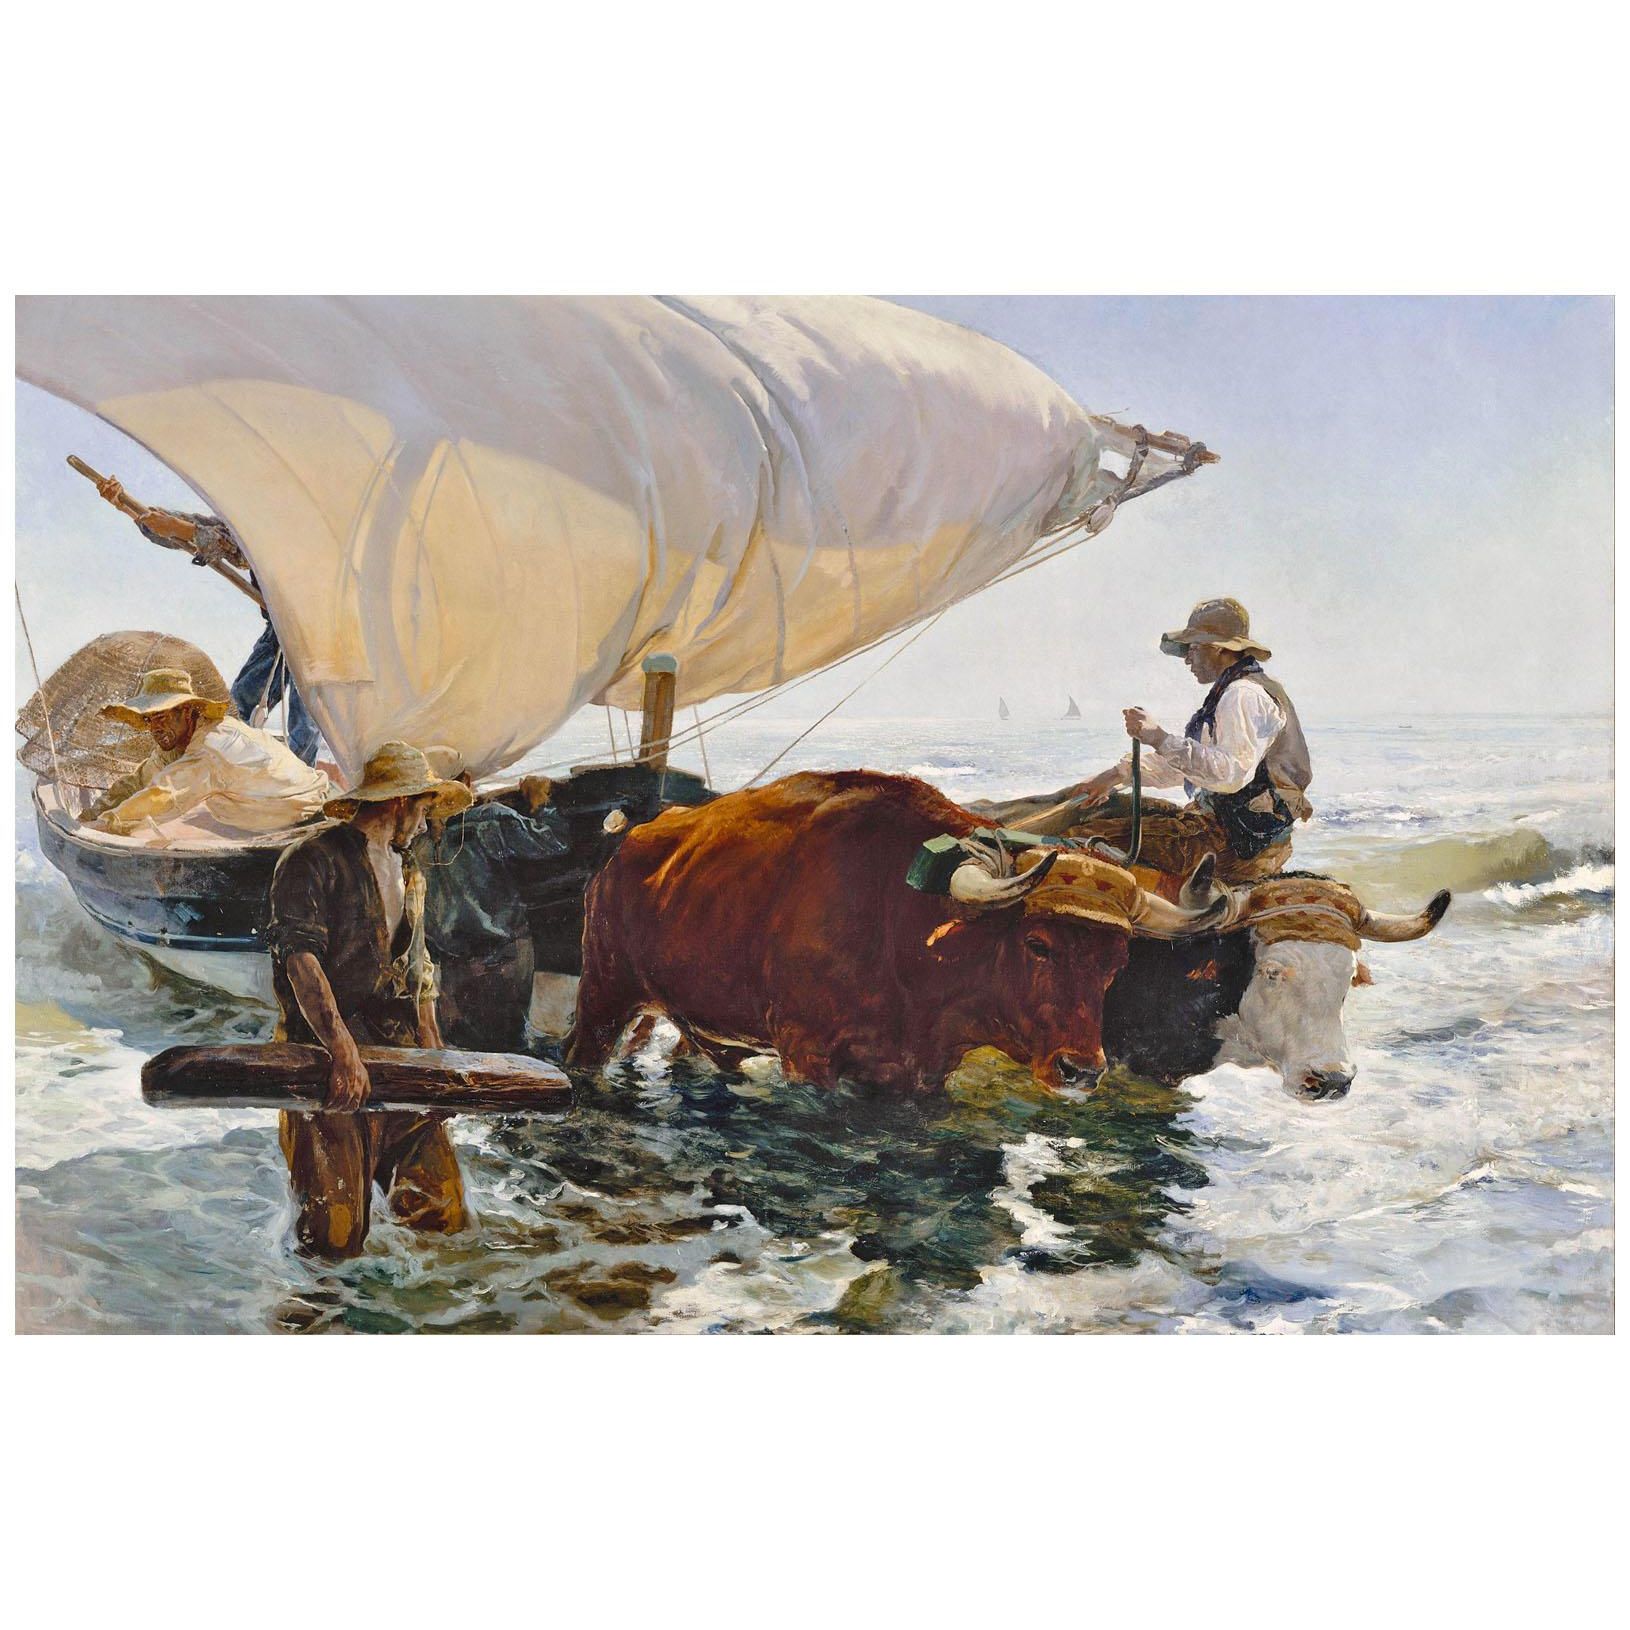 Joaquin Sorolla. La vuelta de la pesca. 1894. Musee d’Orsay